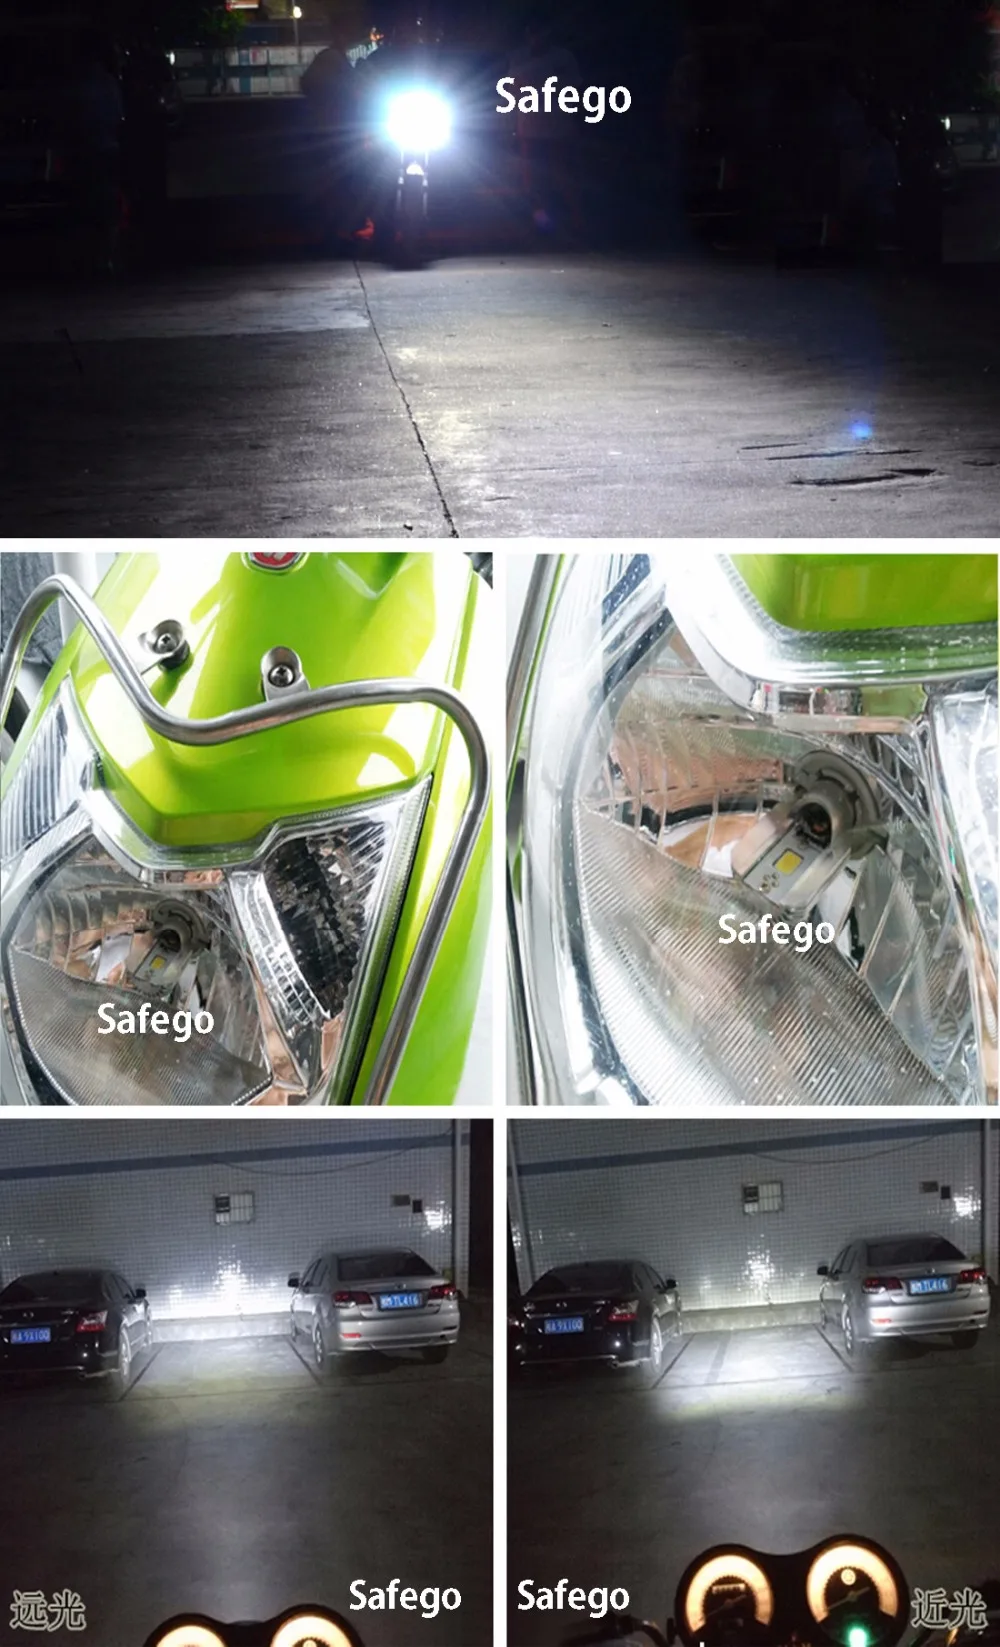 Safego BA20D мотоциклетные светодио дный лампы 1157 9 Вт 1000LM 6000 К Здравствуйте Lo луч все в одном светодио дный мотоциклетные лампы фары лампочки 12 В